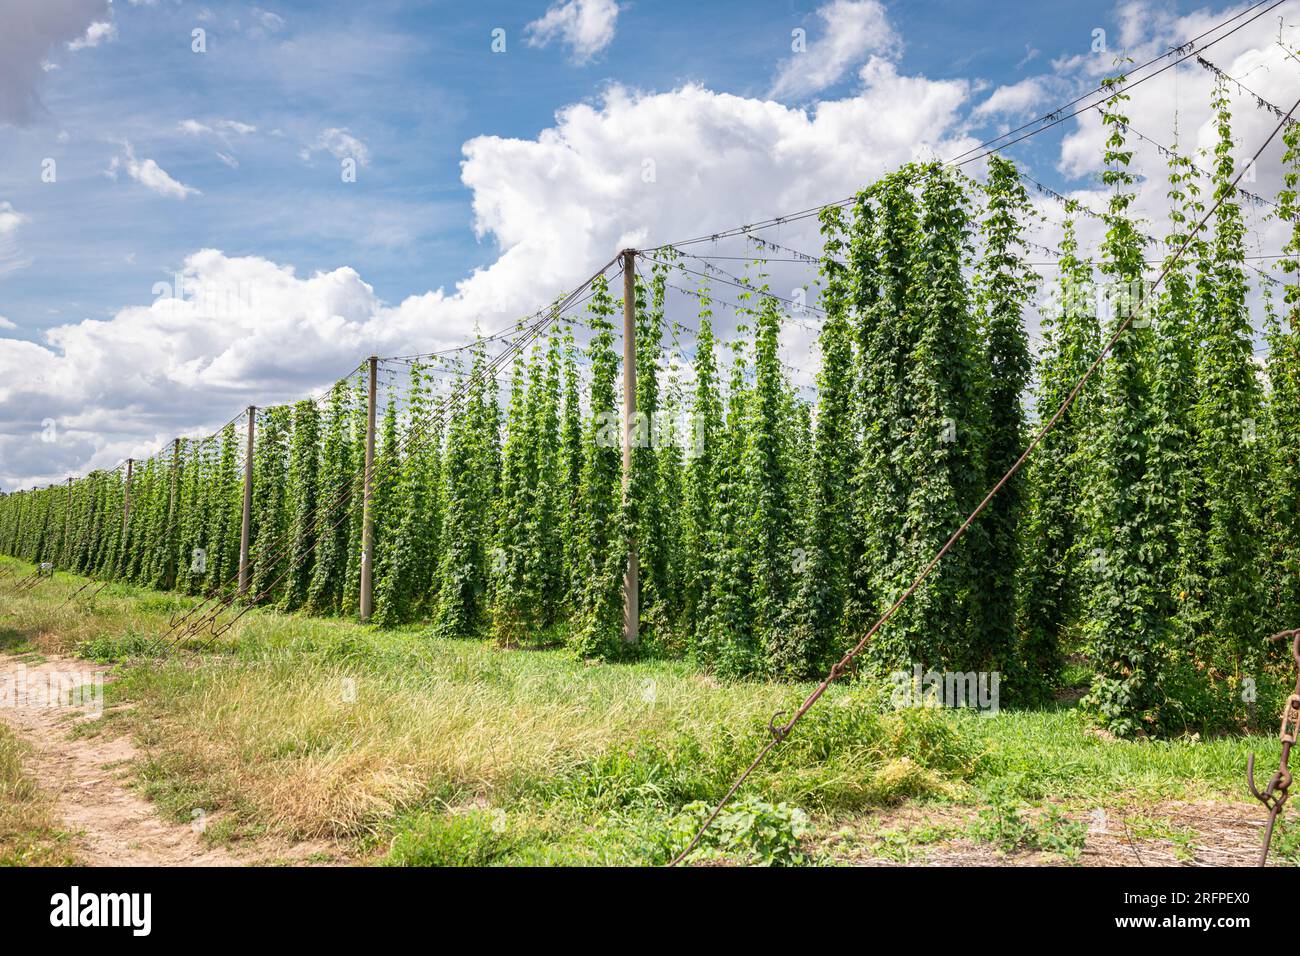 Coltivazione di piante di luppolo (Humulus lupulus) come ingrediente per la produzione di birra vicino alla città di Lautitz, nell'estremo est della Germania. Foto Stock